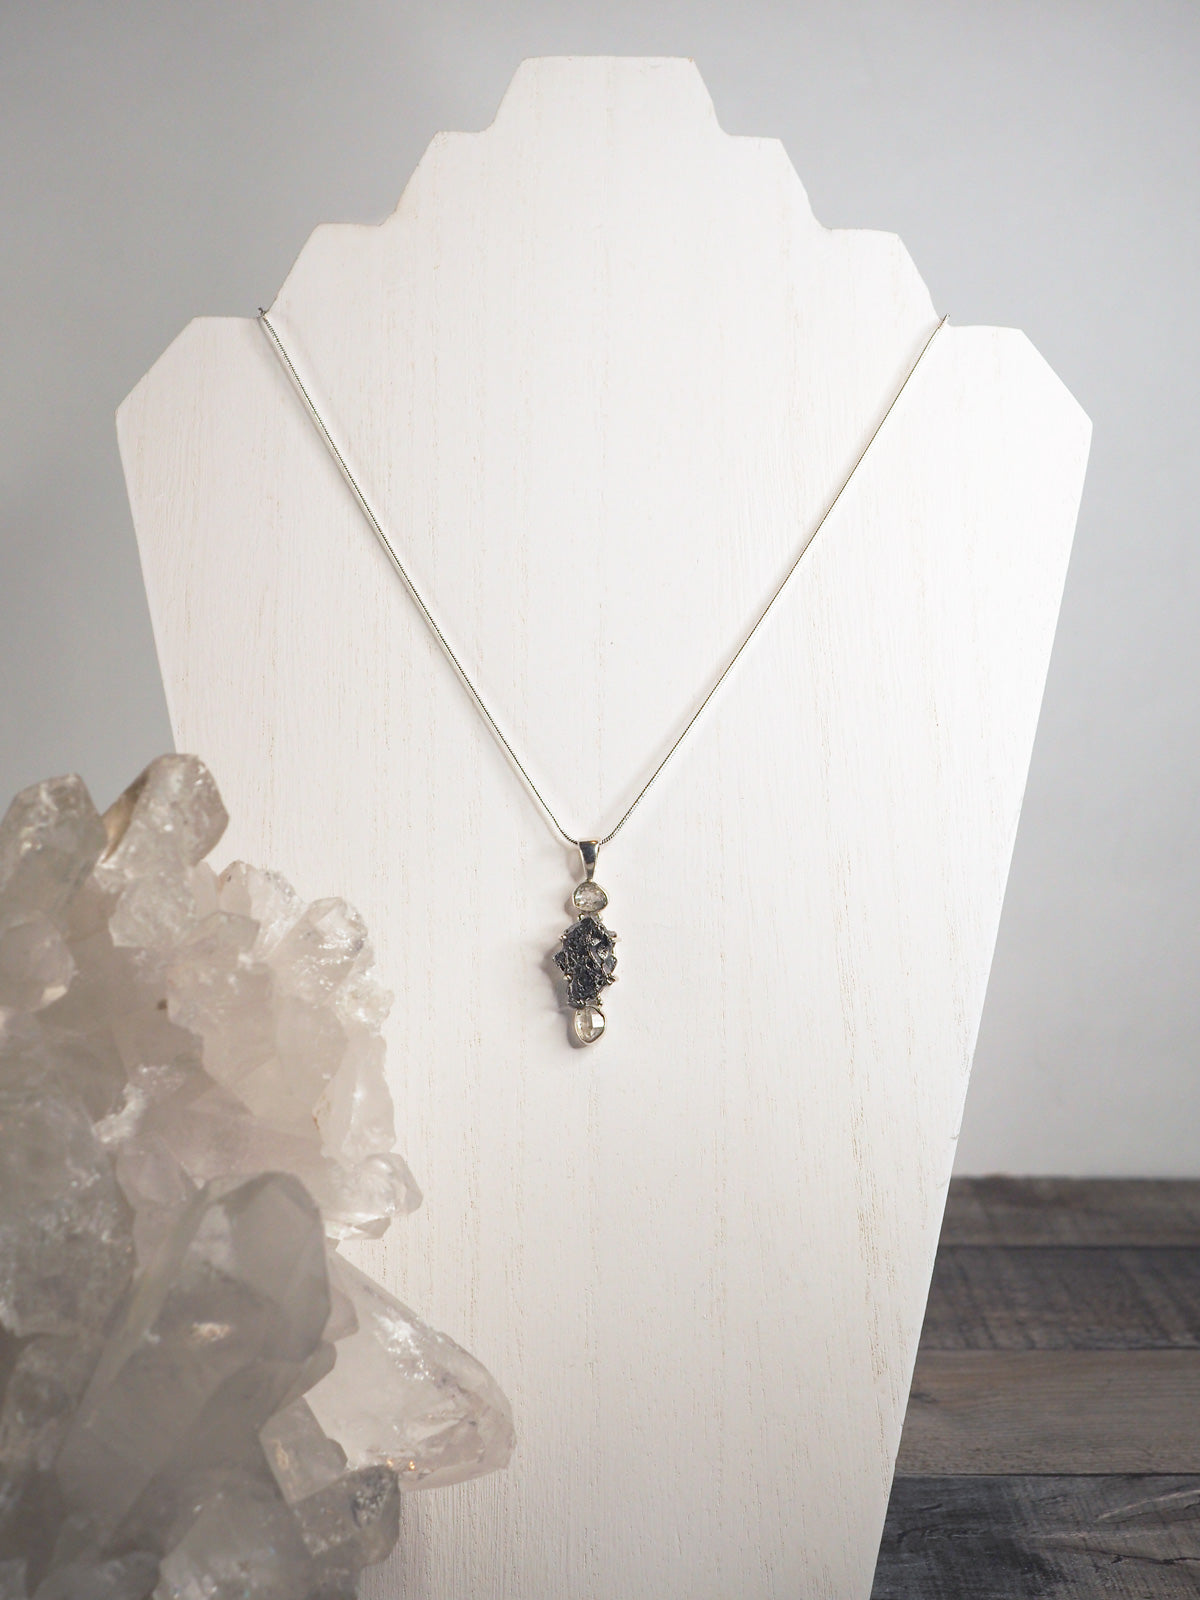 Small Meteorite Necklace | The Red Door Gallery